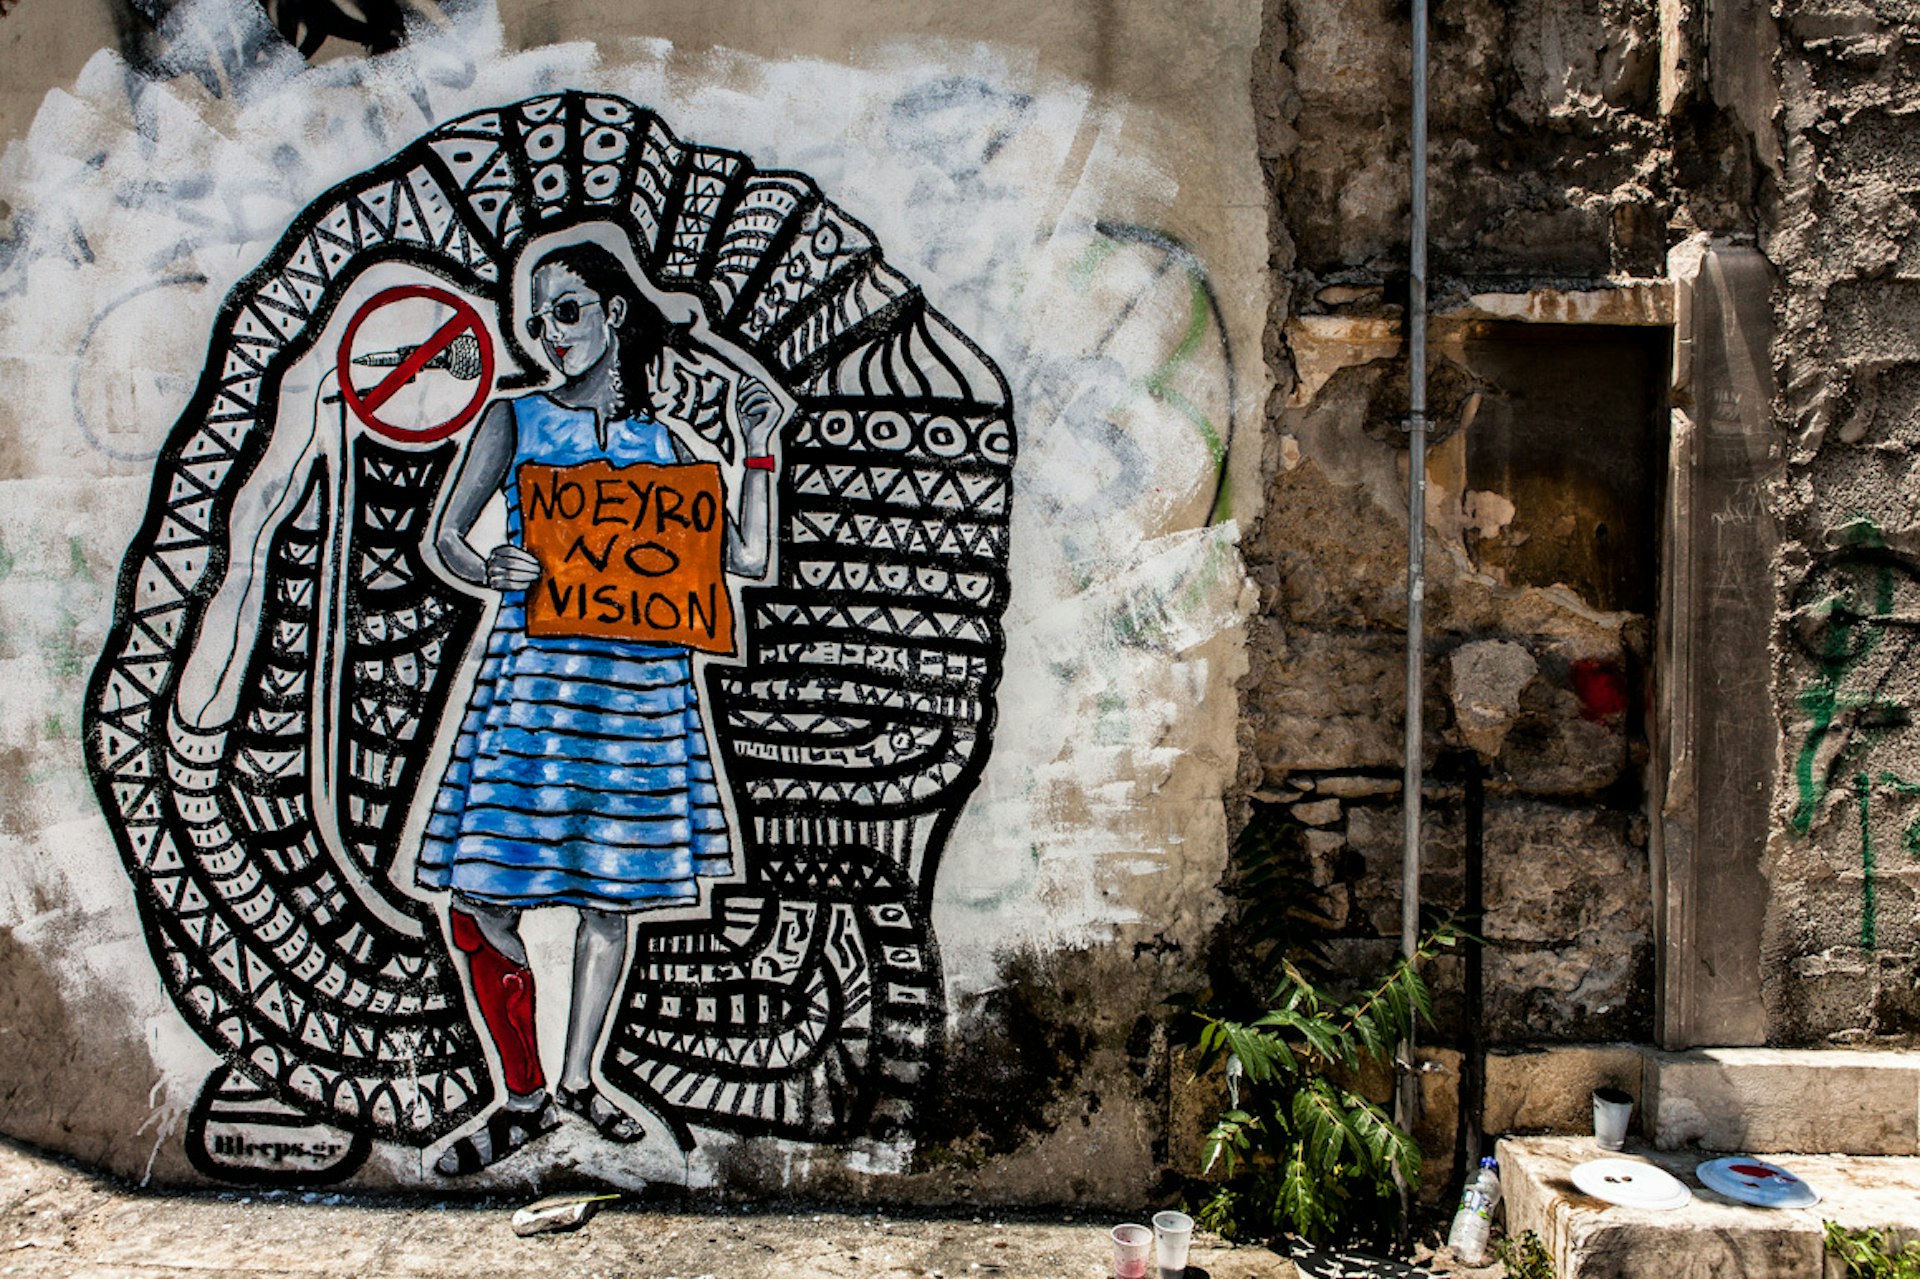 The street artist responding to Greece's social turmoil